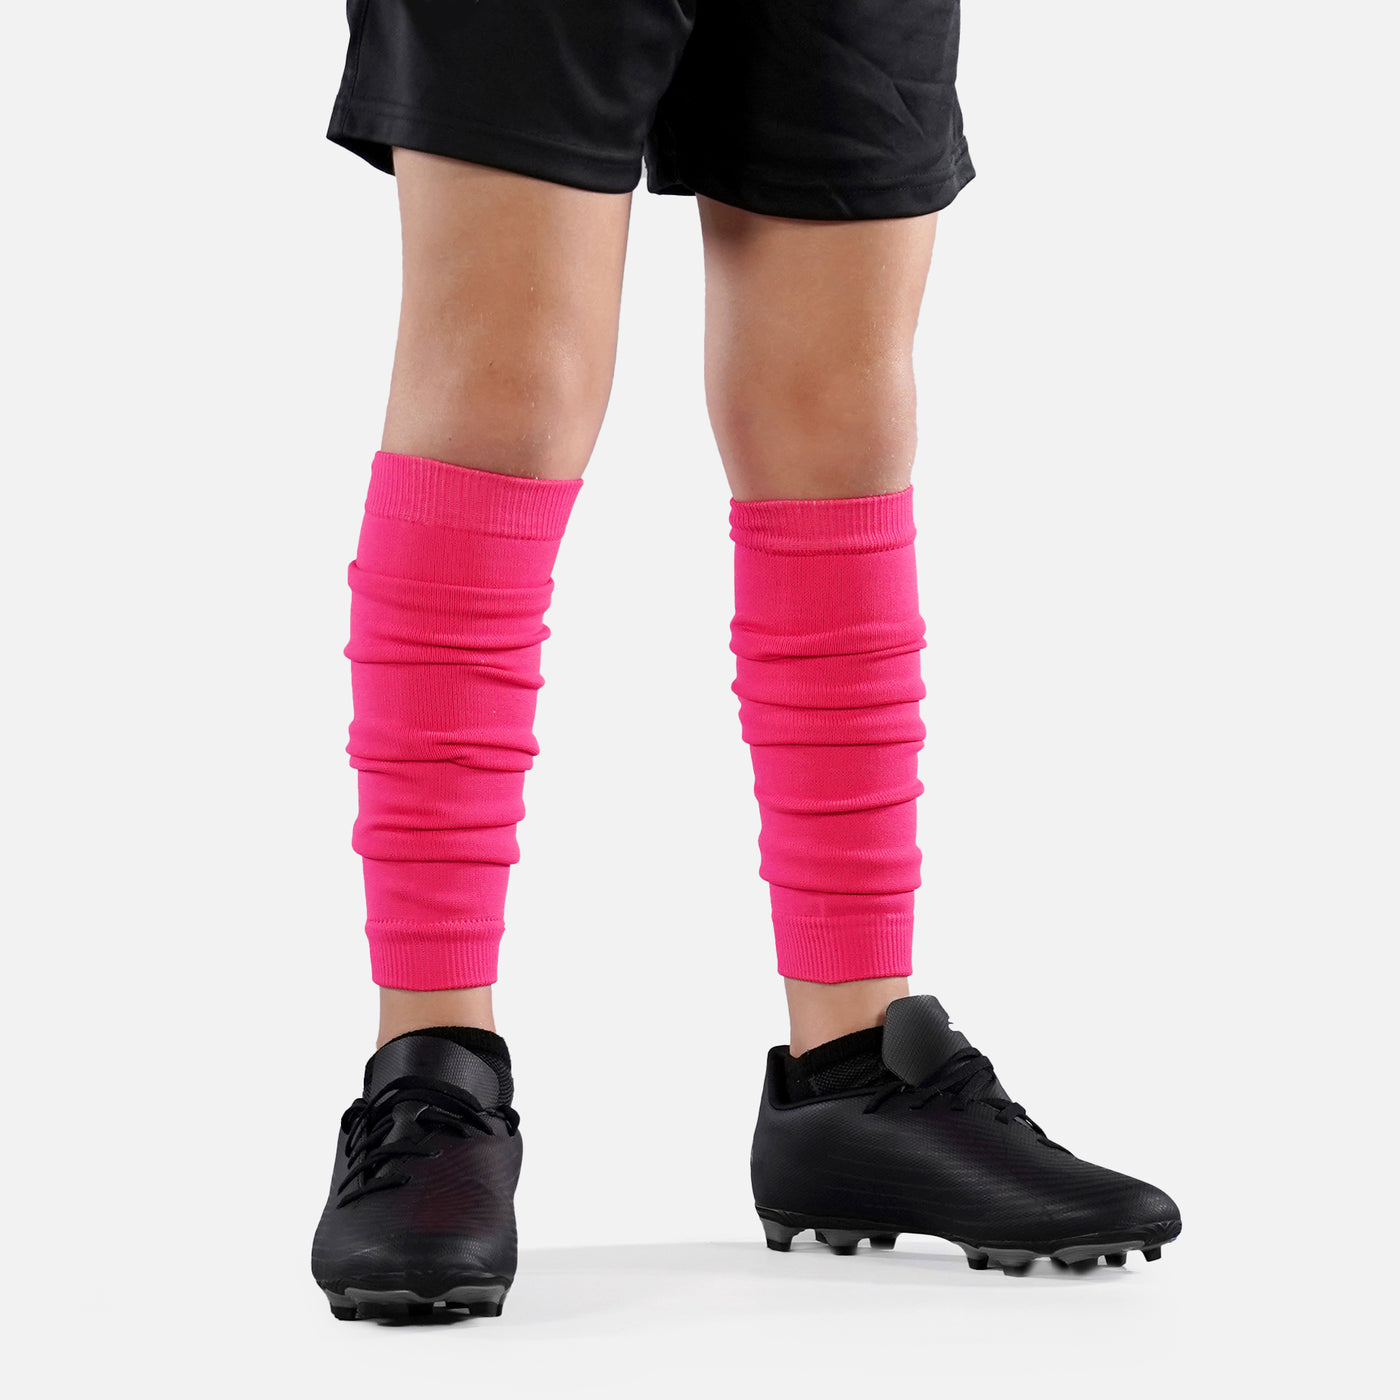 Hue Pink Kids Scrunchie Leg Sleeves